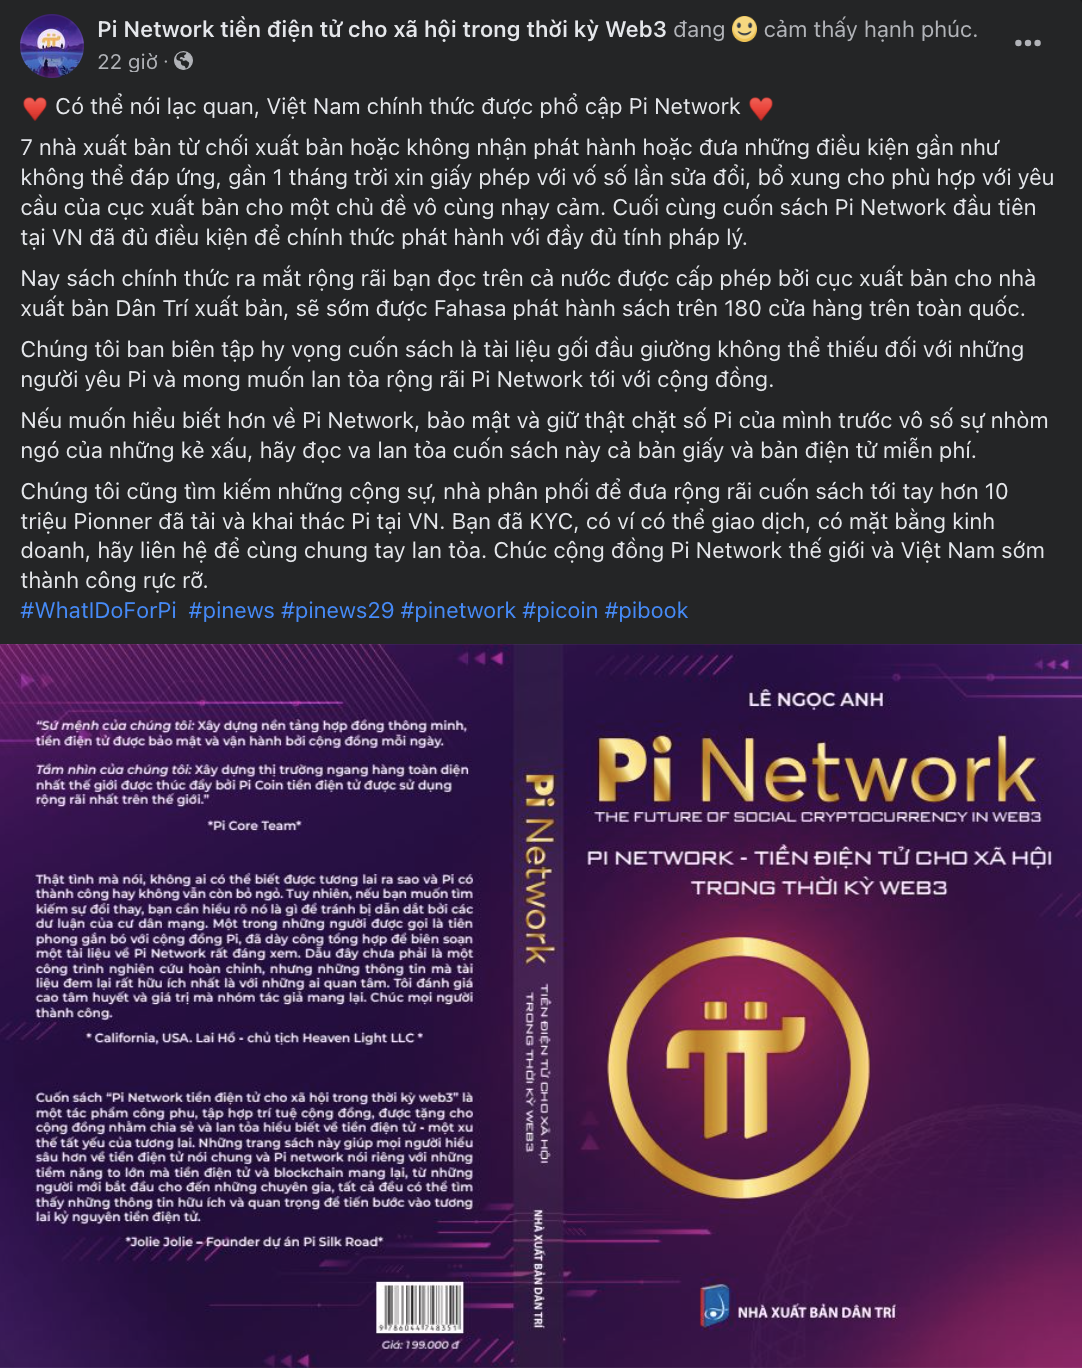 Nghi vấn cộng đồng Pi Network sắp phát hành sách tại Việt Nam?